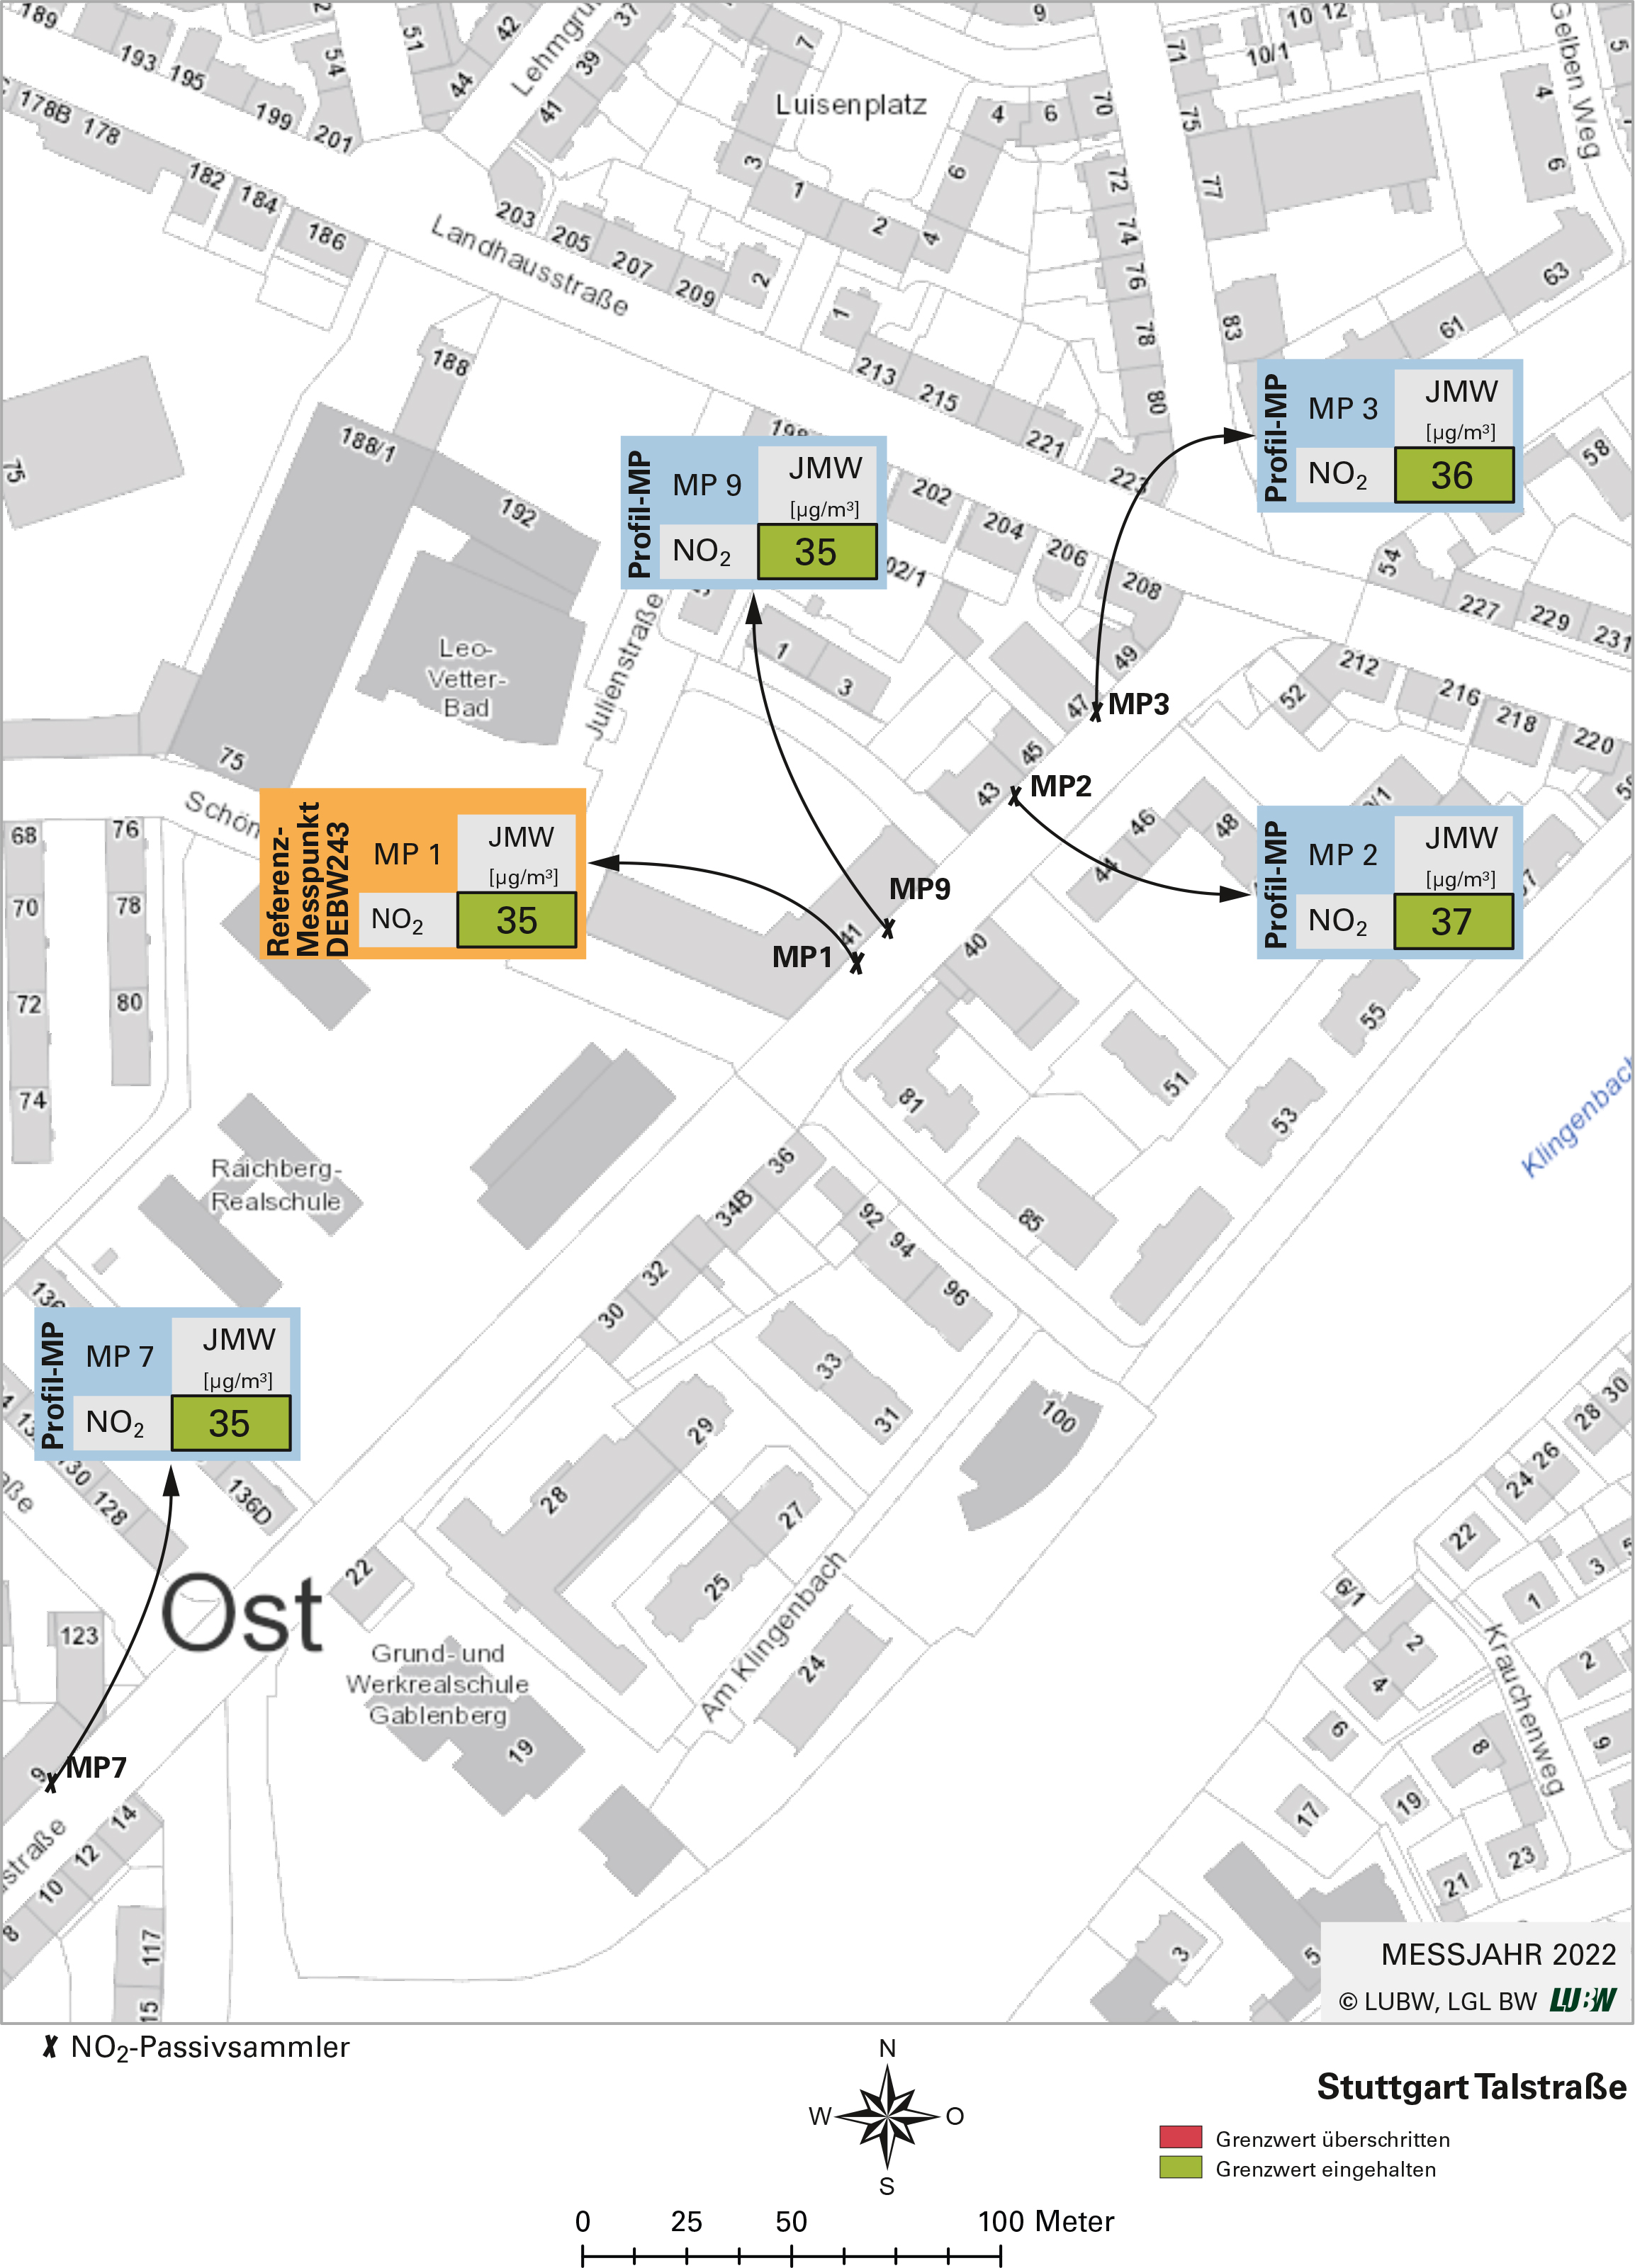 Kartenausschnitt, der die Lage der Messstelle Stuttgart Talstraße (Referenzmesspunkt) sowie der 4 Profilmesspunkte zeigt. Dargestellt sind zudem die Ergebnisse (Jahresmittelwerte 2022) der sowohl am Referenzmesspunkt als auch an den Profilmesspunkten gemessenen Stickstoffdioxidbelastung.